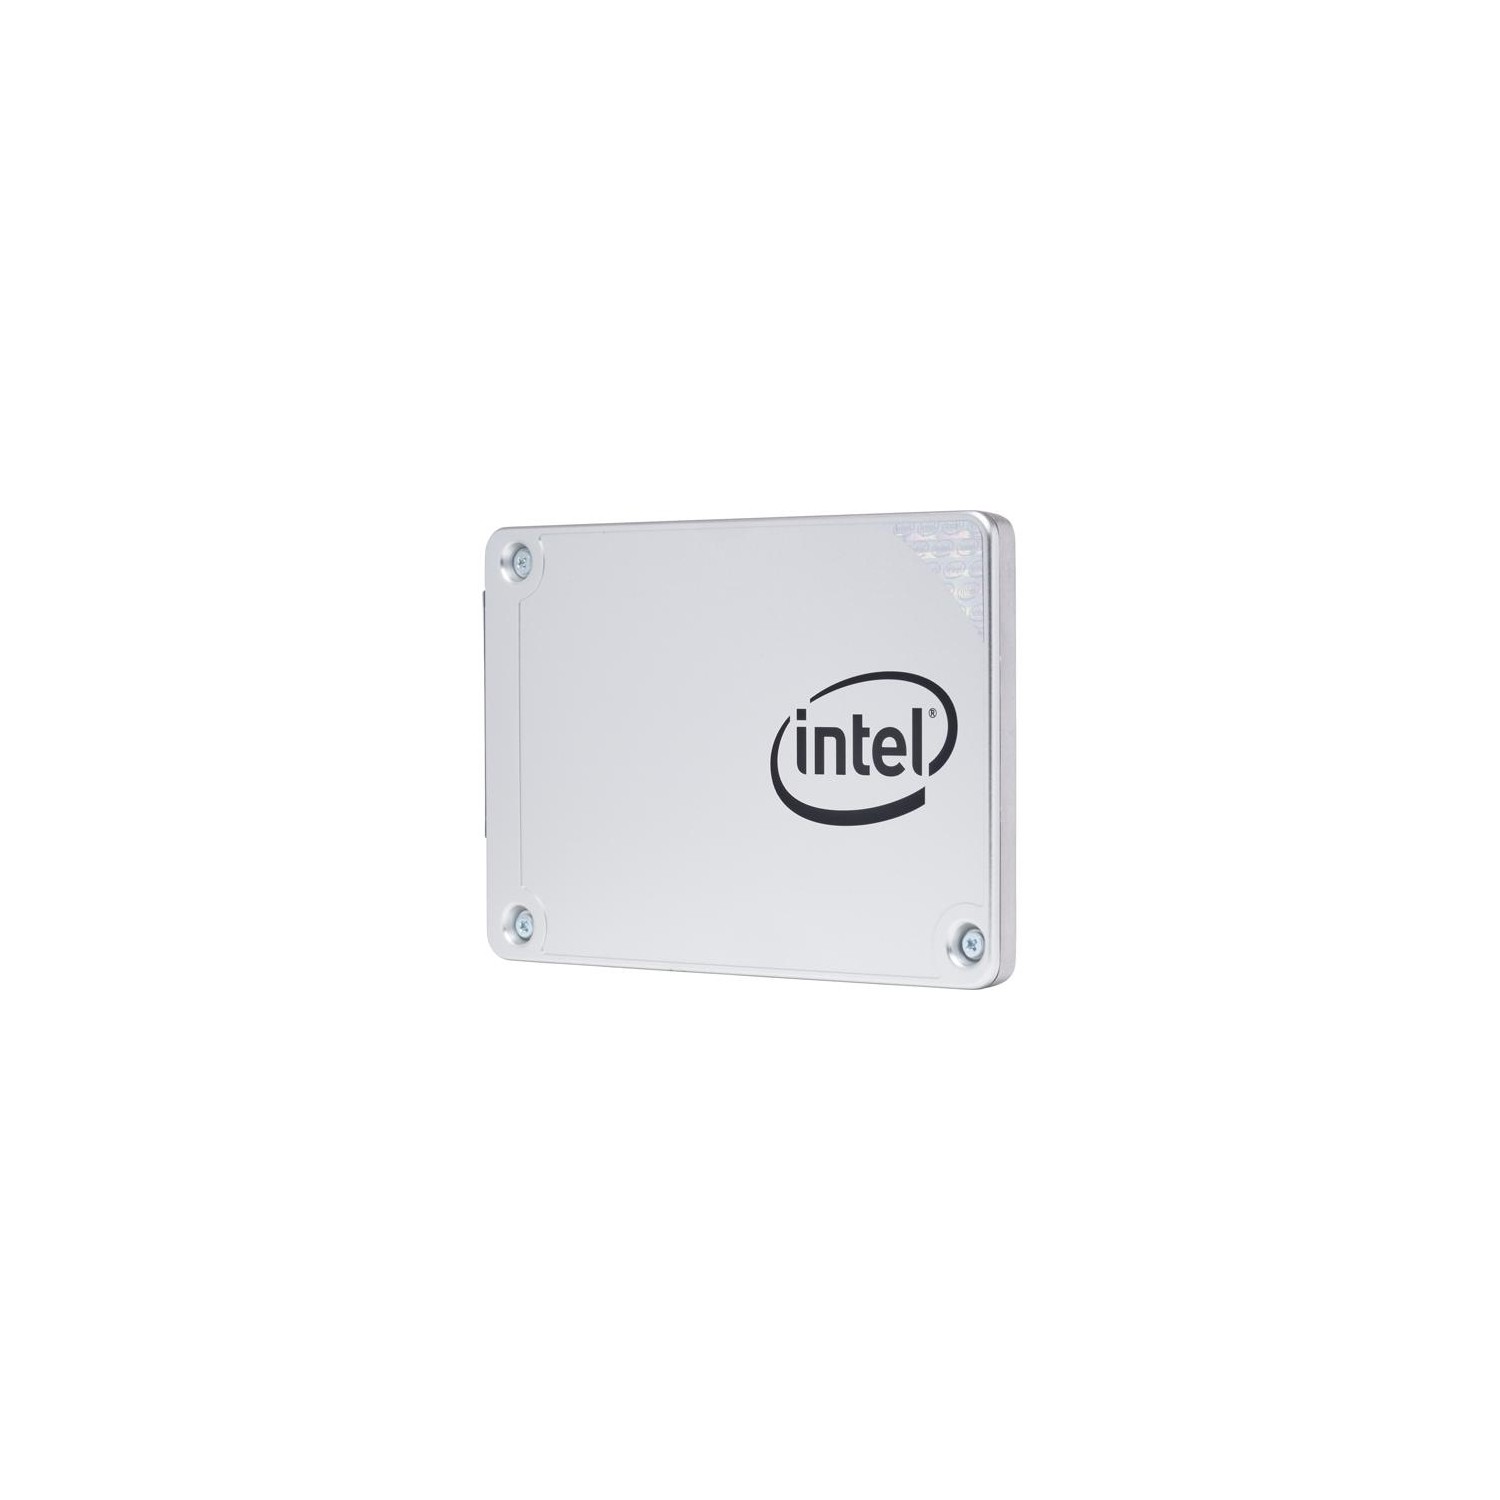 Intel 540s Series 2.5" 240GB SATA III TLC Internal Solid State Drive (SSD)